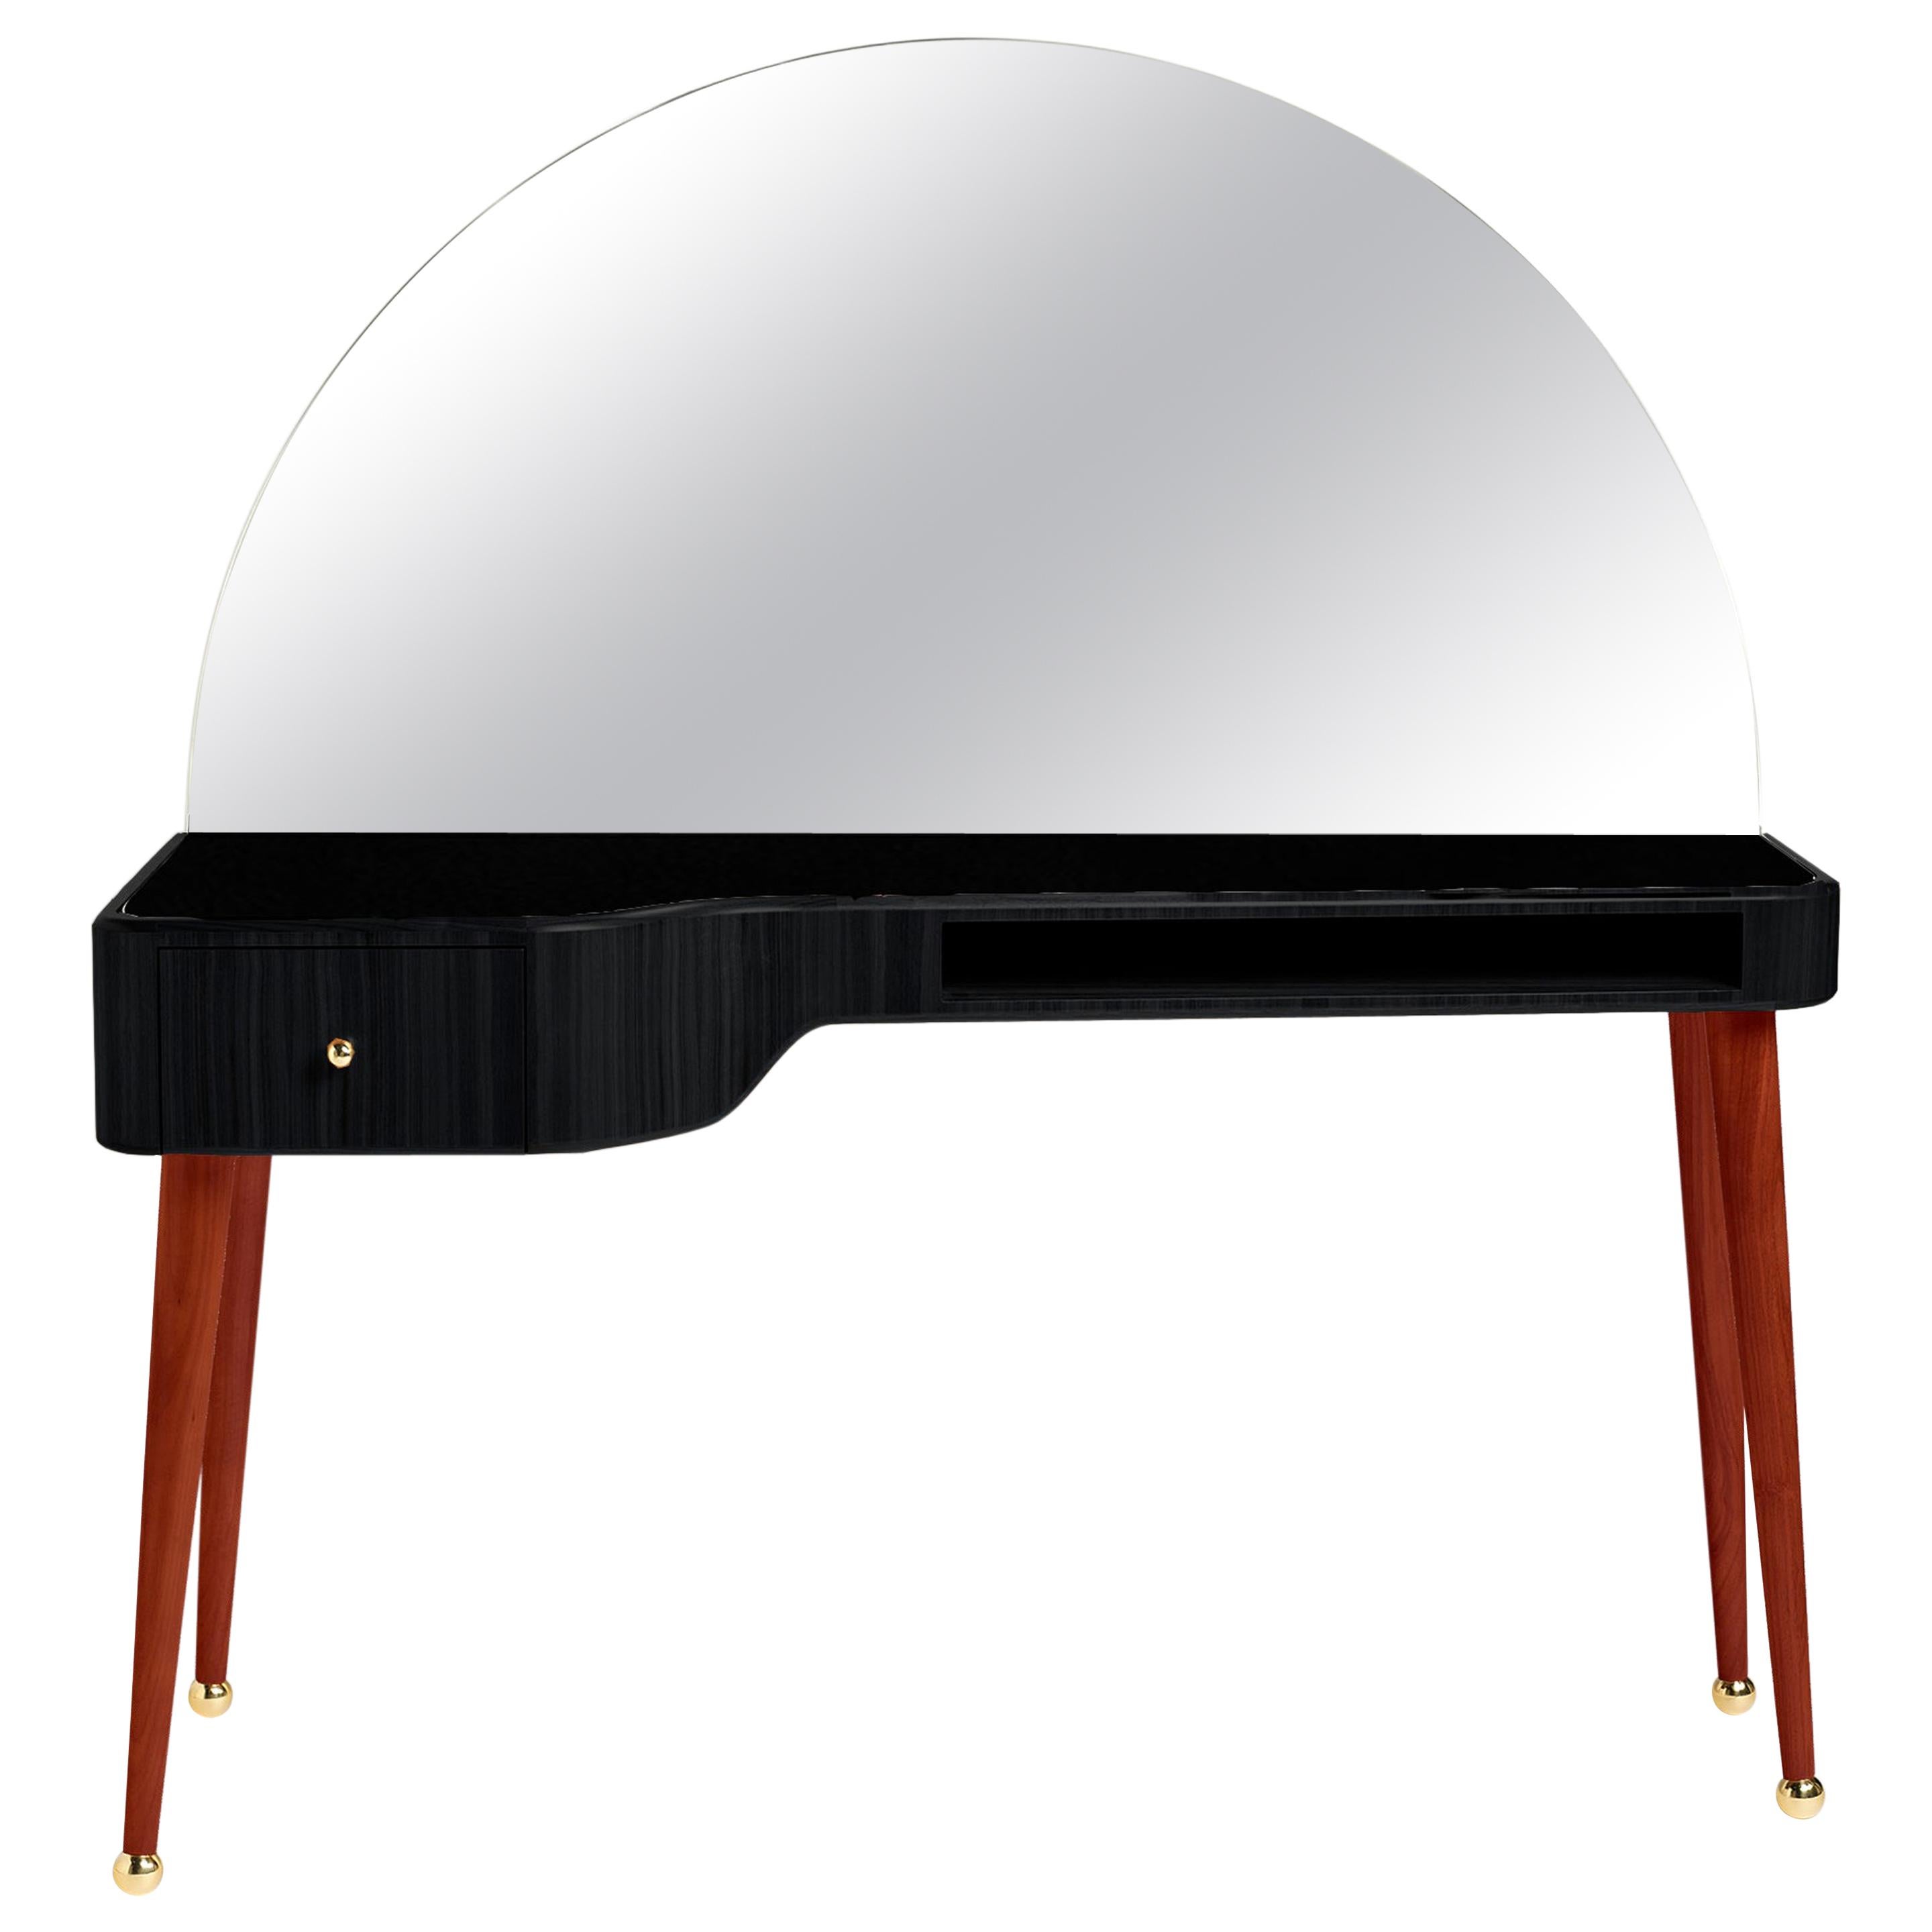 21st Century American Walnut Veneer Vanity Desk with Mirror, Black and Red